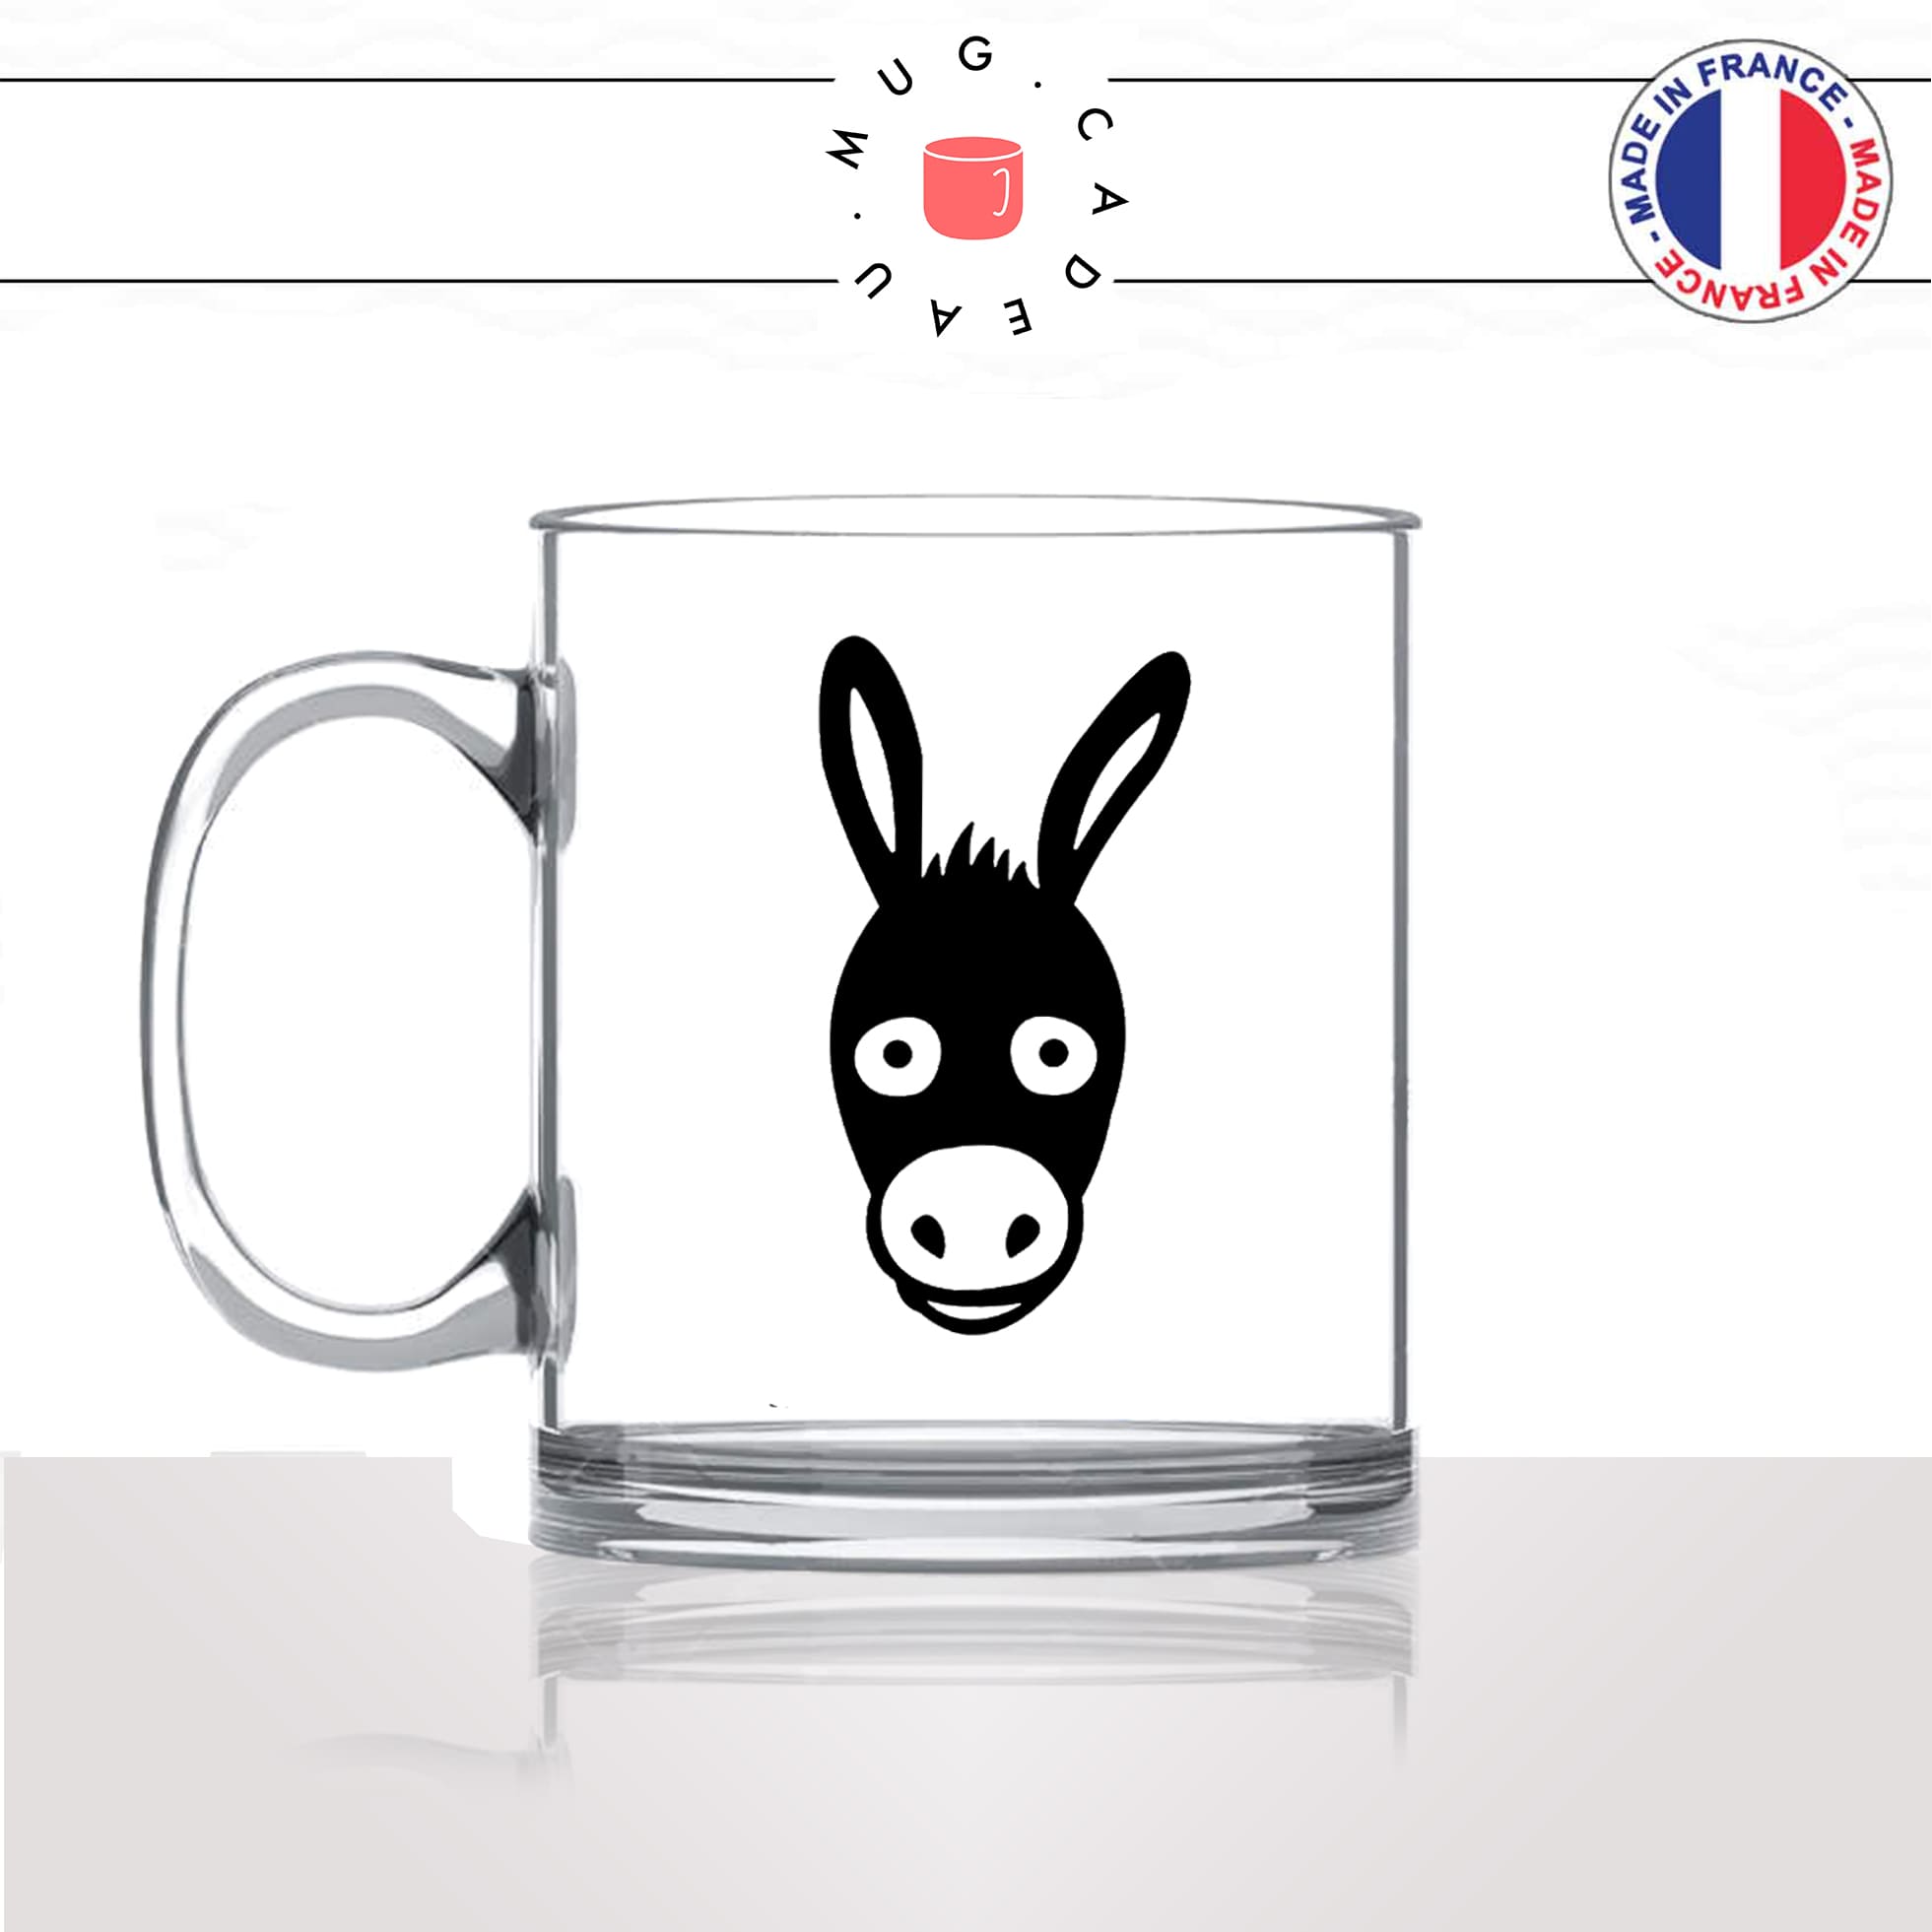 mug-tasse-en-verre-transparent-glass-dessin-tete-de-mule-cheval-ane-expression-animaux-humour-fun-idée-cadeau-originale-cool